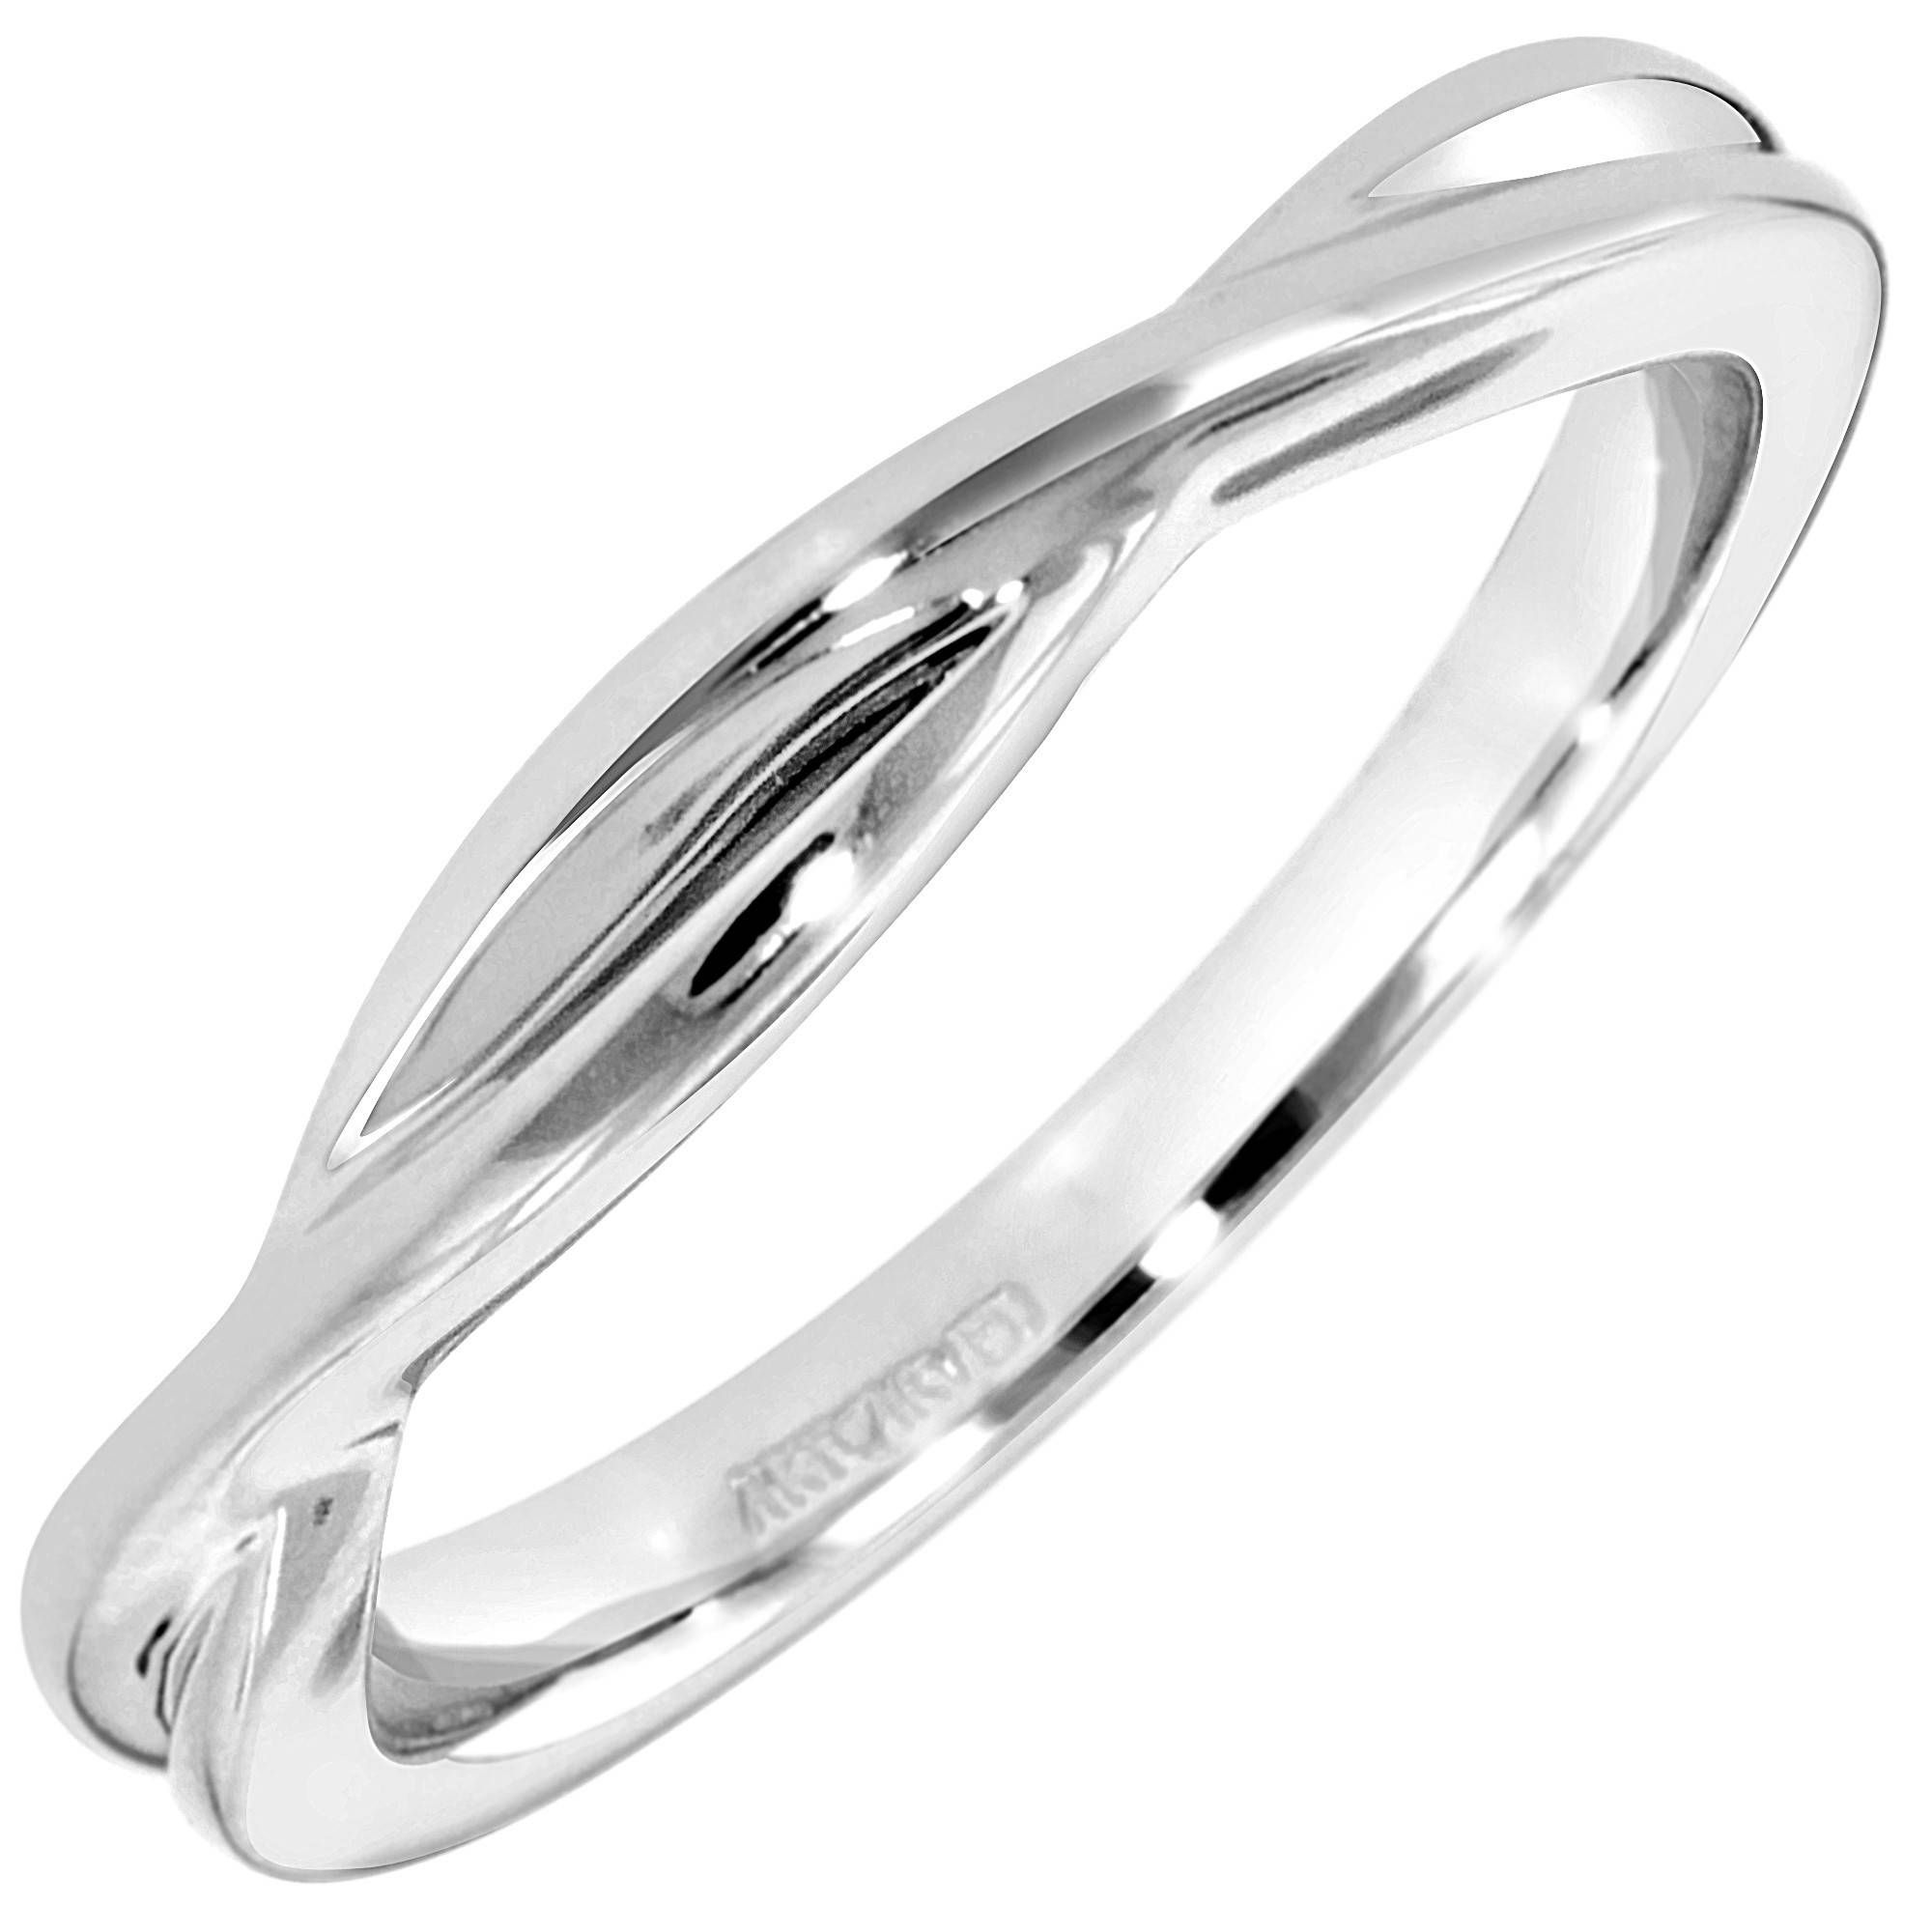 Ring : Artcarved Wedding Rings Vintage Engagement Ring Royal Ring In Art Carved Wedding Bands (View 12 of 15)